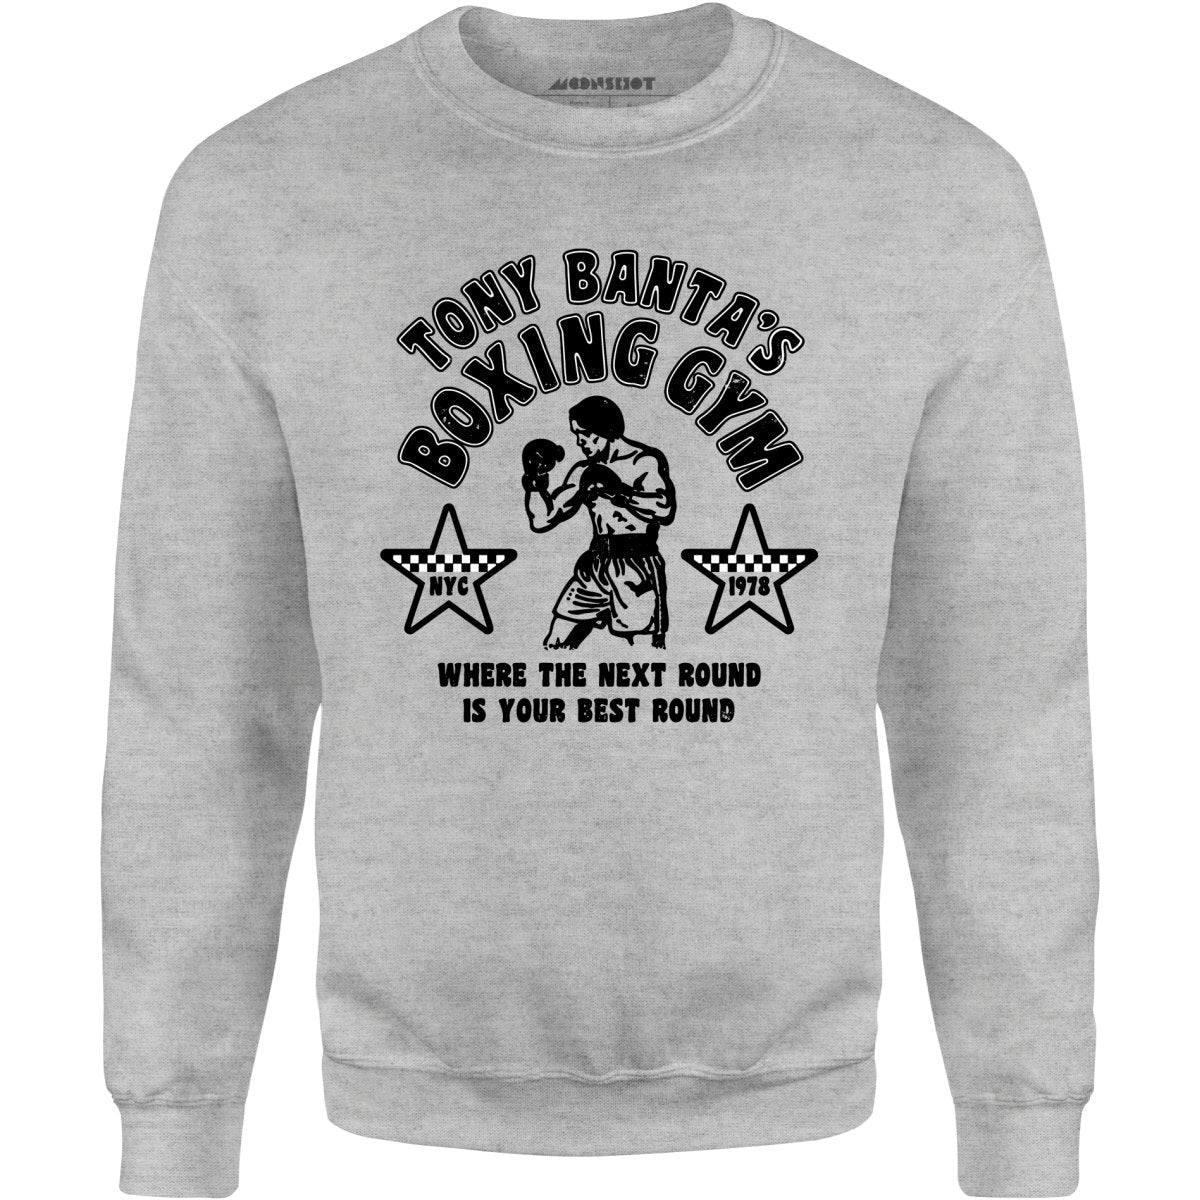 Tony Banta's Boxing Gym - Unisex Sweatshirt